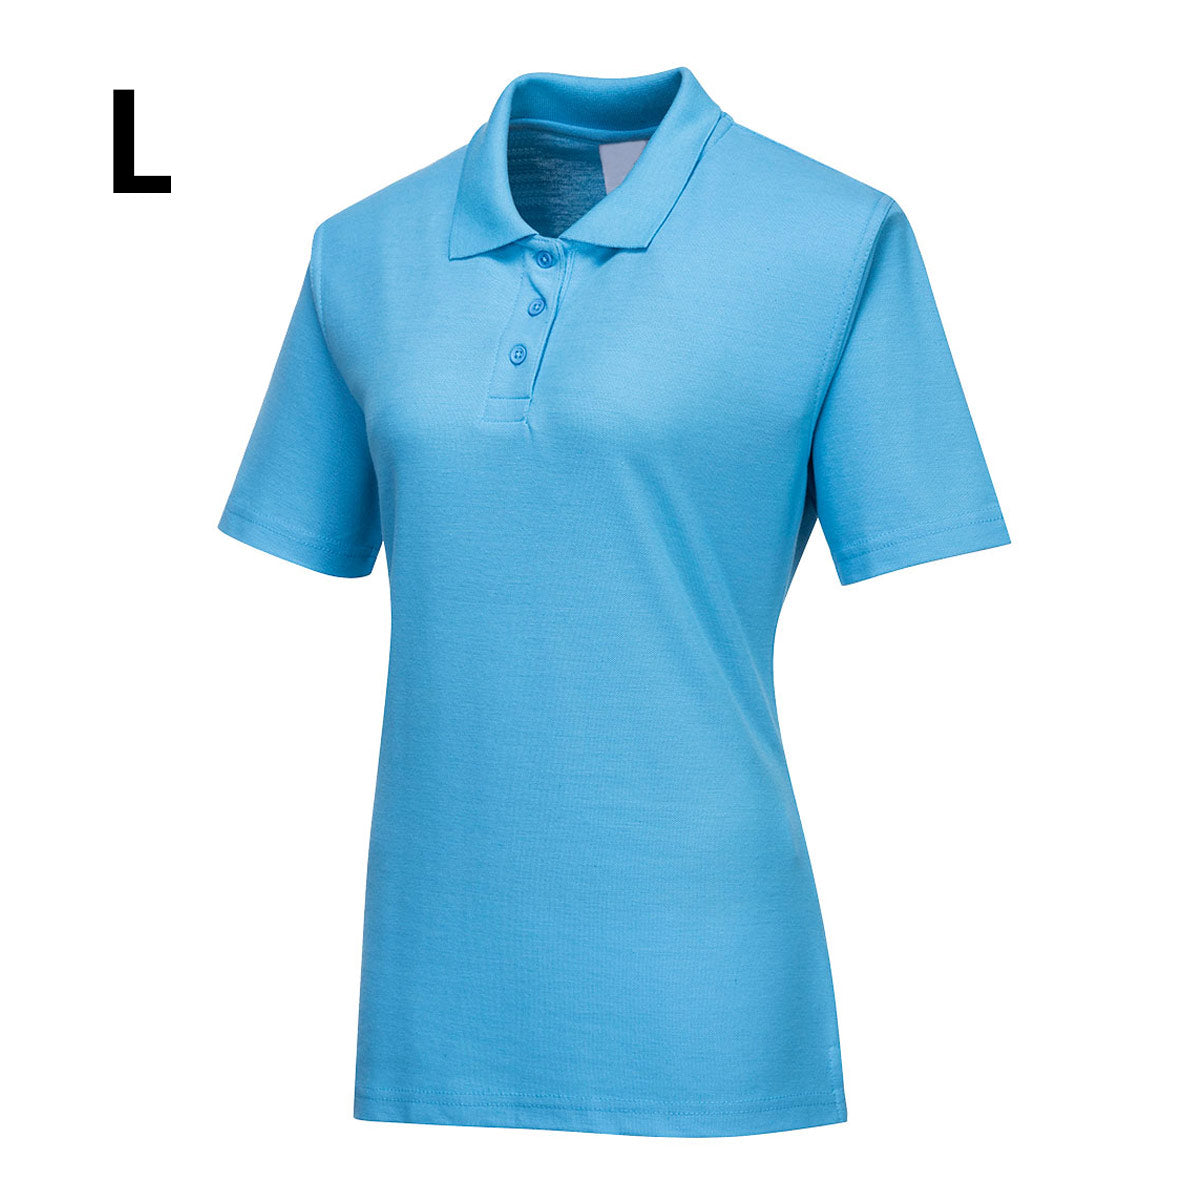 Poloshirt til damer - Himmelblå - Størrelse: L